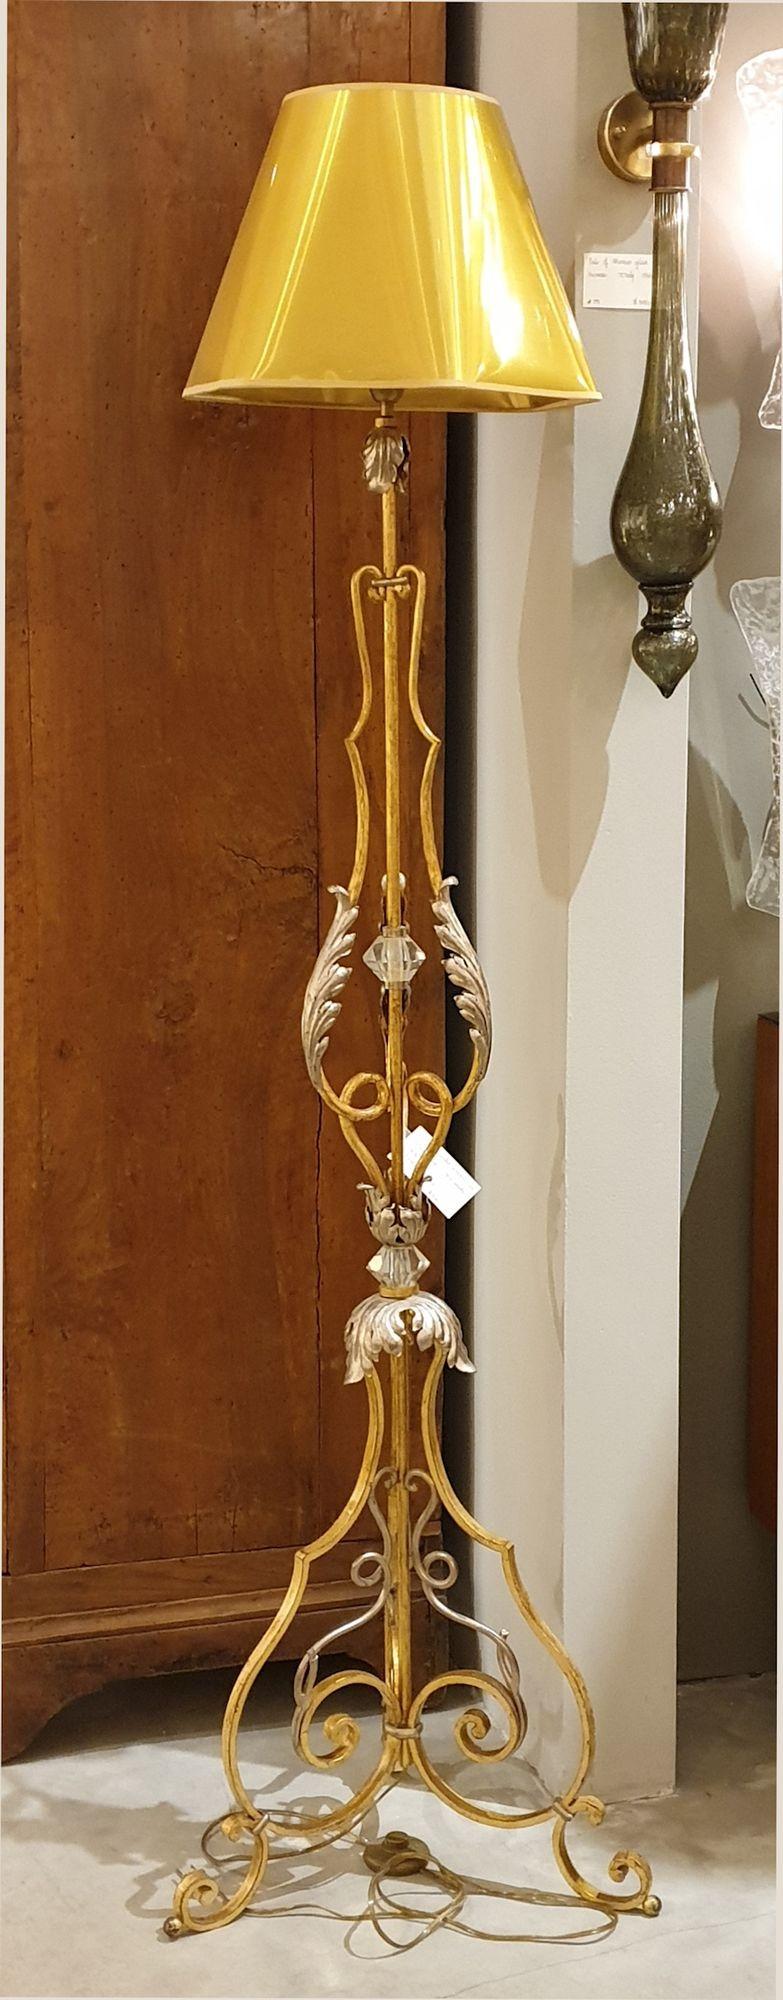 Einzelne vergoldete Stehlampe aus Schmiedeeisen und Kristall, Frankreich 1940er Jahre.
Die Stehlampe ist aus vergoldetem Schmiedeeisen mit vergoldeten Akanthusblättern und einigen silbernen Ornamenten gefertigt.
Die Stehlampe aus der Mitte des